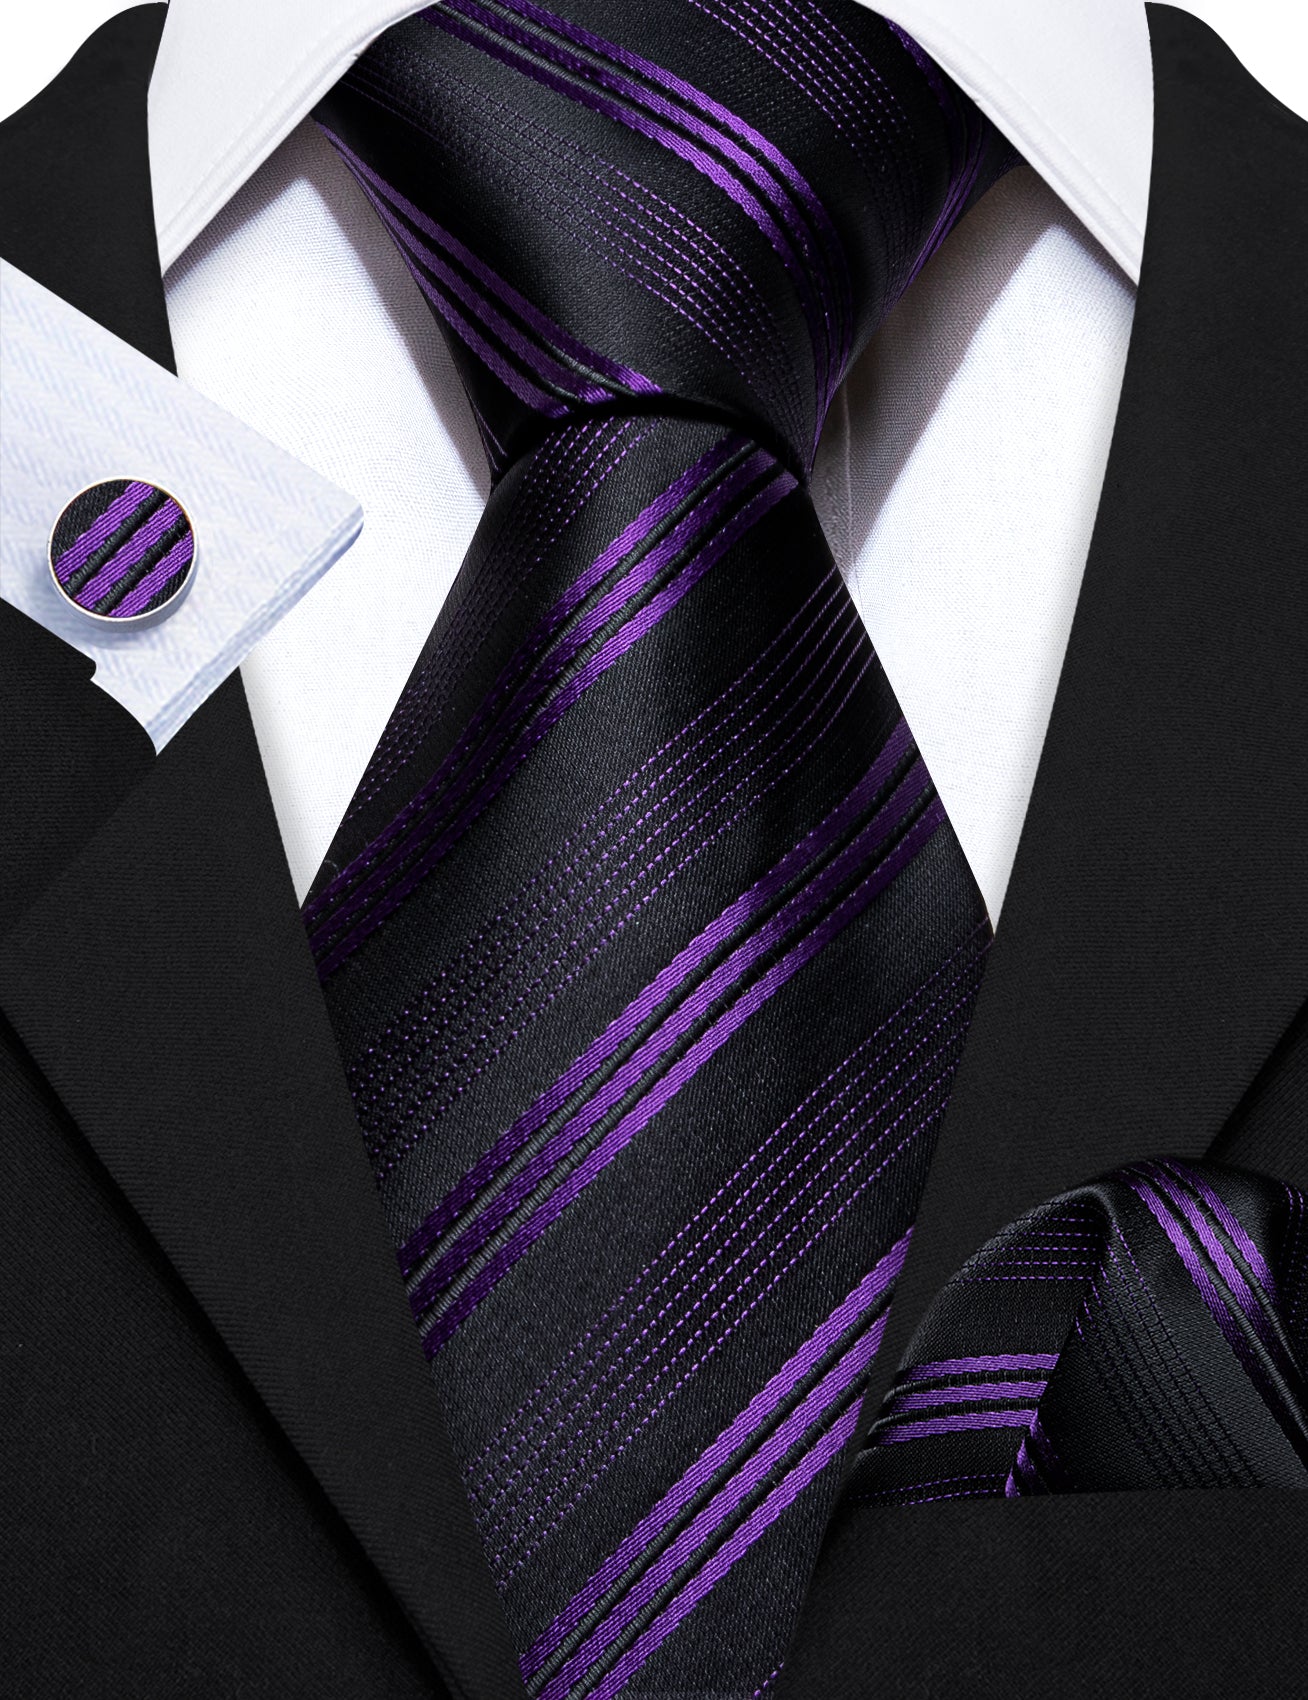 Barry.wang Black Tie Purple Striped Silk Men's Tie Hanky Cufflinks Set